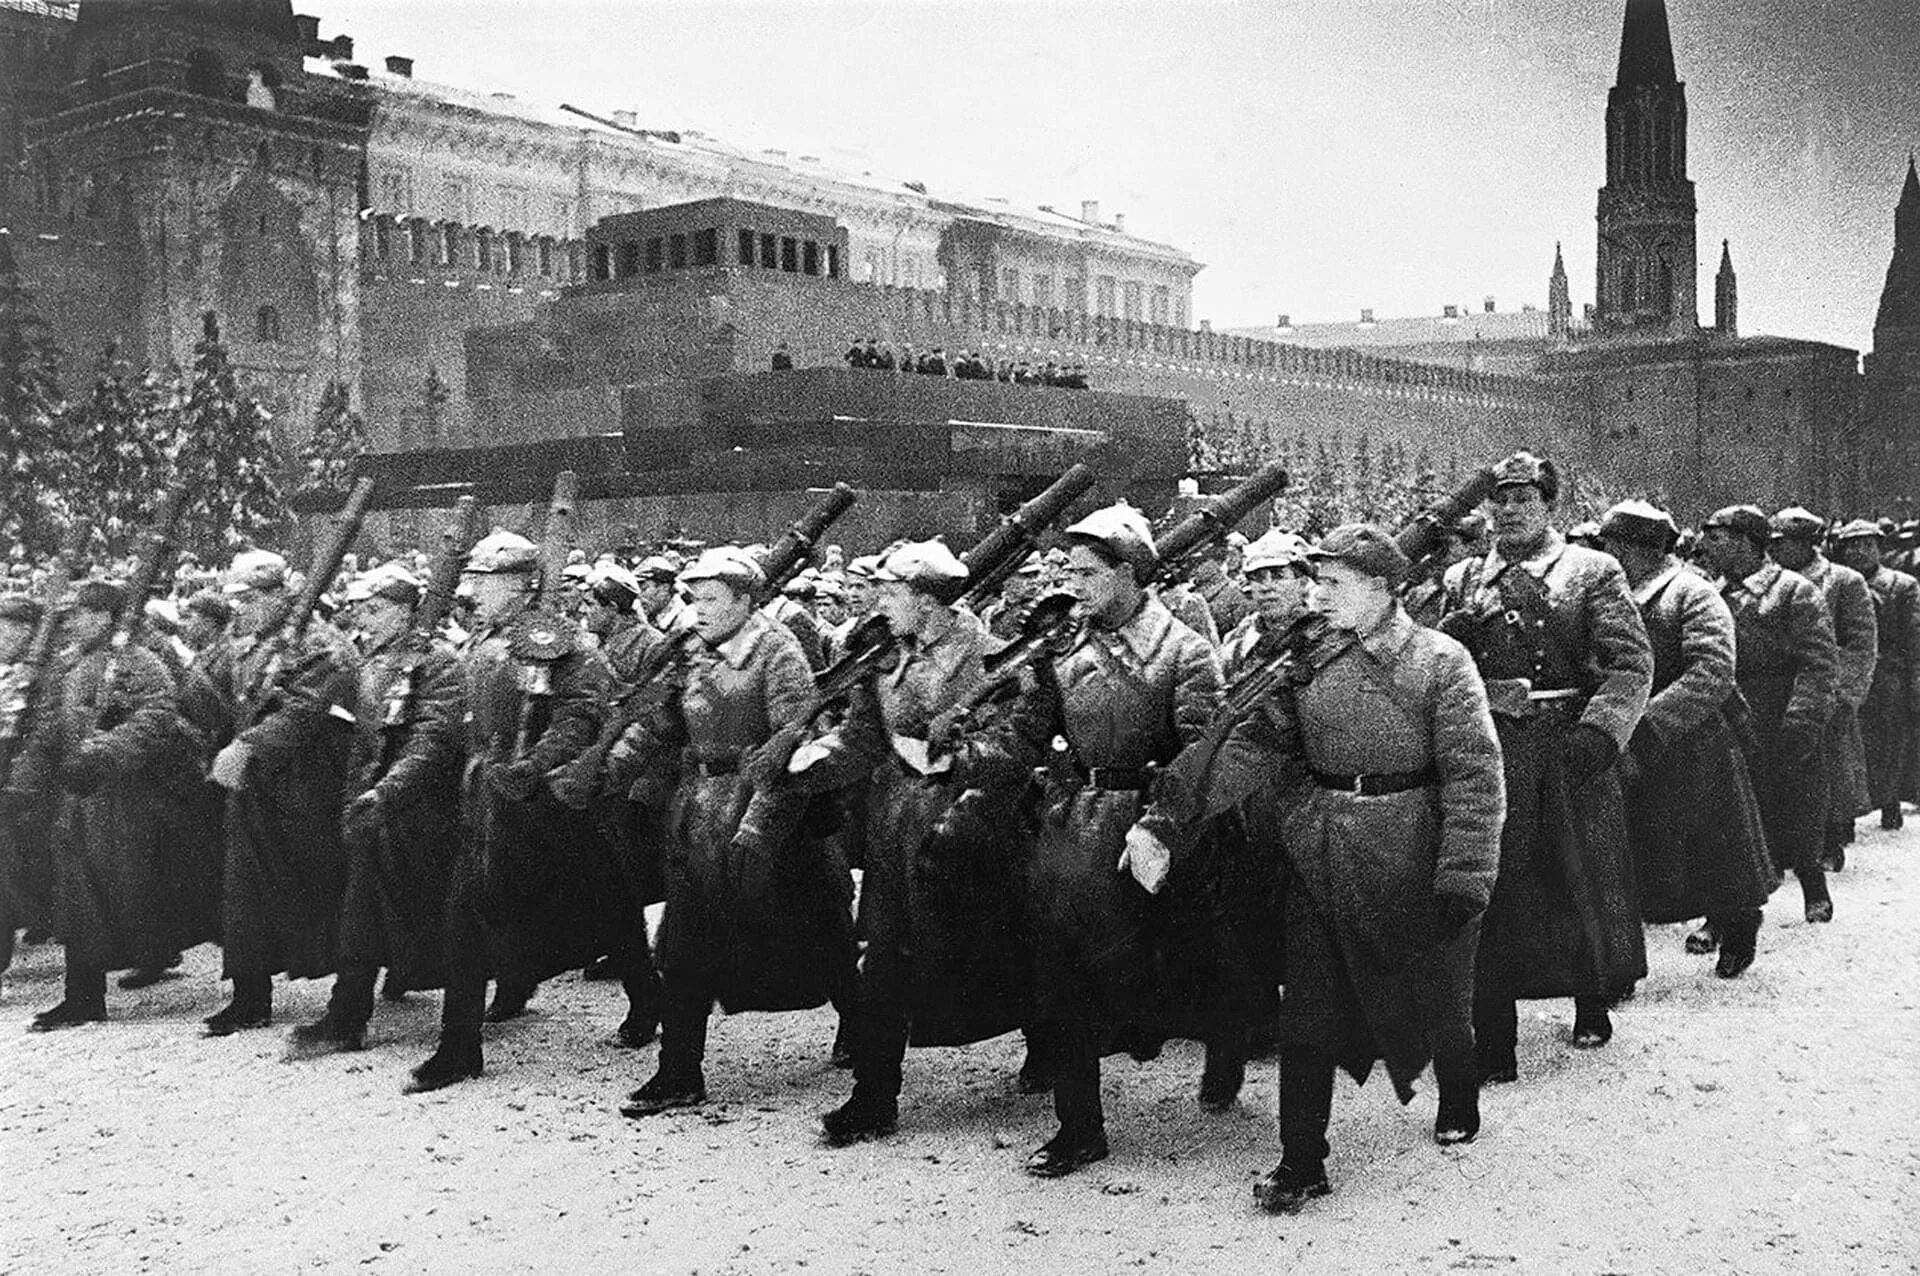 Фото истории великой отечественной войны. Битва за Москву 7 ноября 1941 года. Парад на красной площади 1941 битва за Москву. Парад 7 ноября 1941 года в Москве на красной площади.